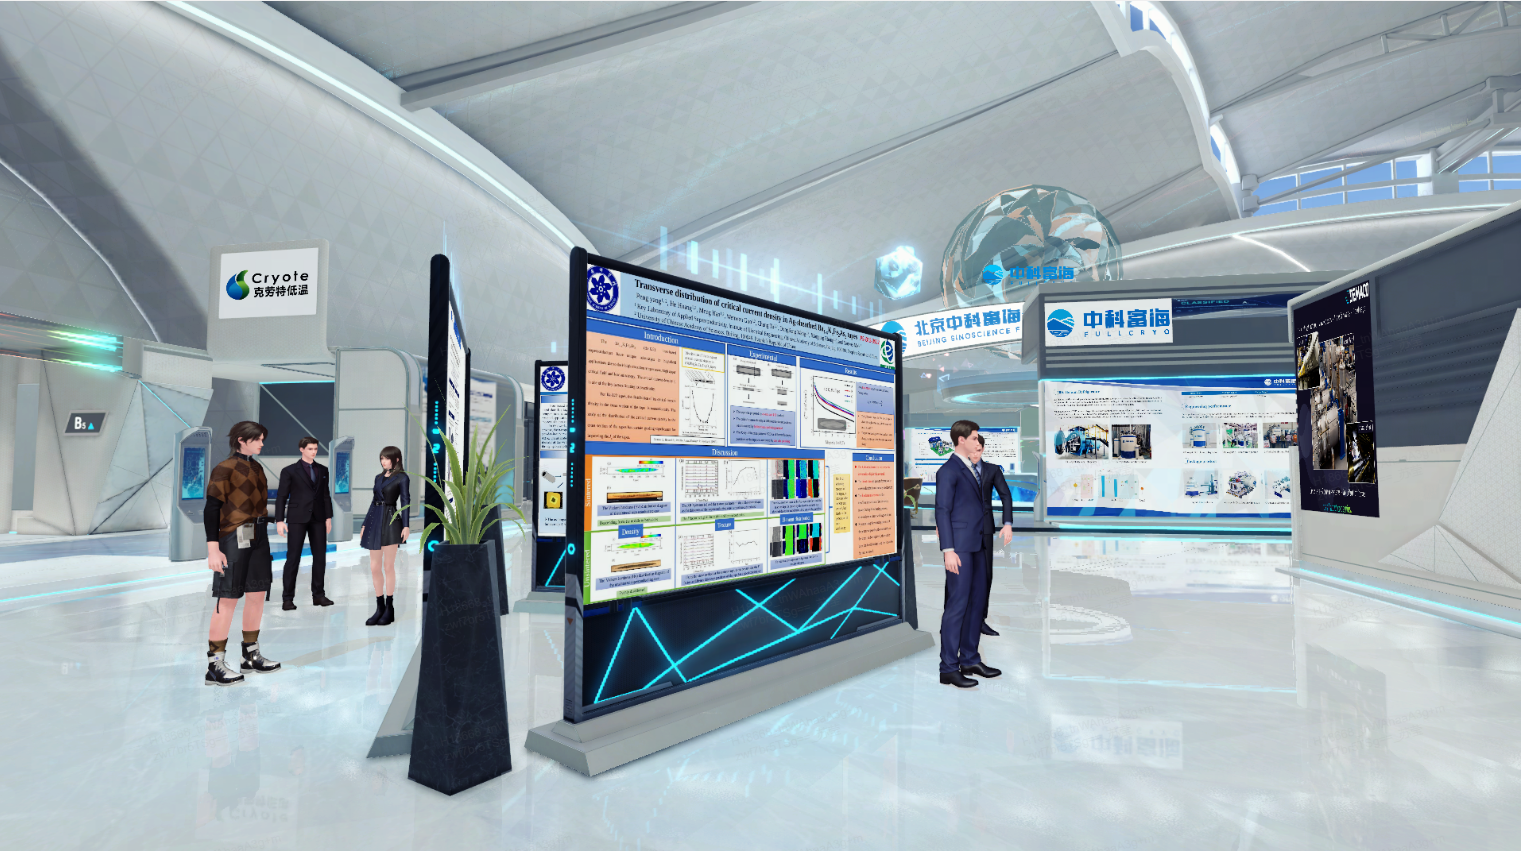 这是一张现代科技会展中心的图片，里面有几位参观者正在查看展板，环境设计现代化，色彩以白色和蓝色为主。